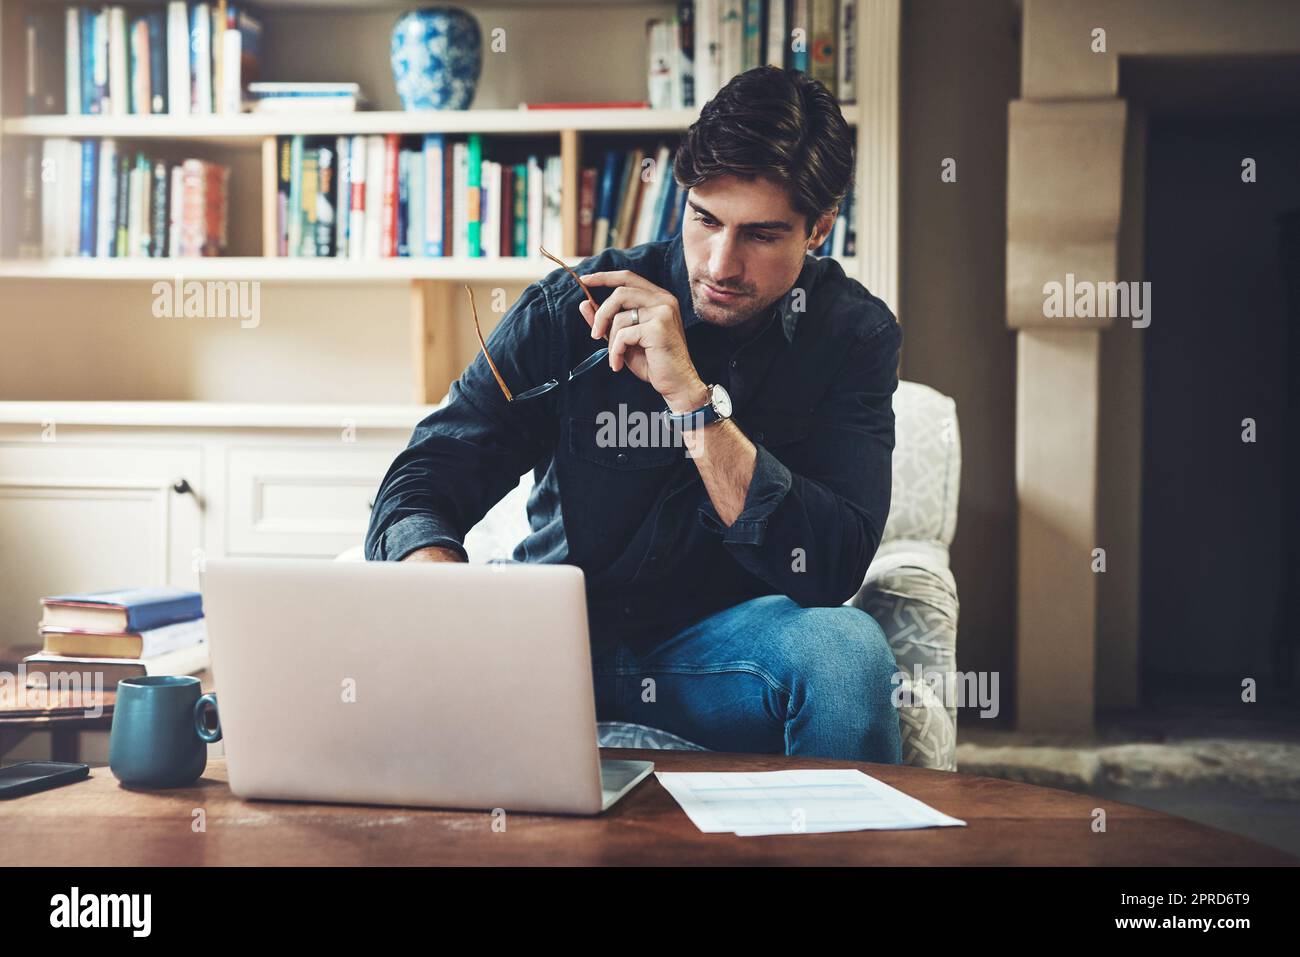 Im viel produktiver, wenn ich zu Hause arbeite. Ein hübscher junger Geschäftsmann, der einen Laptop benutzt, während er zu Hause in seinem Büro arbeitet. Stockfoto